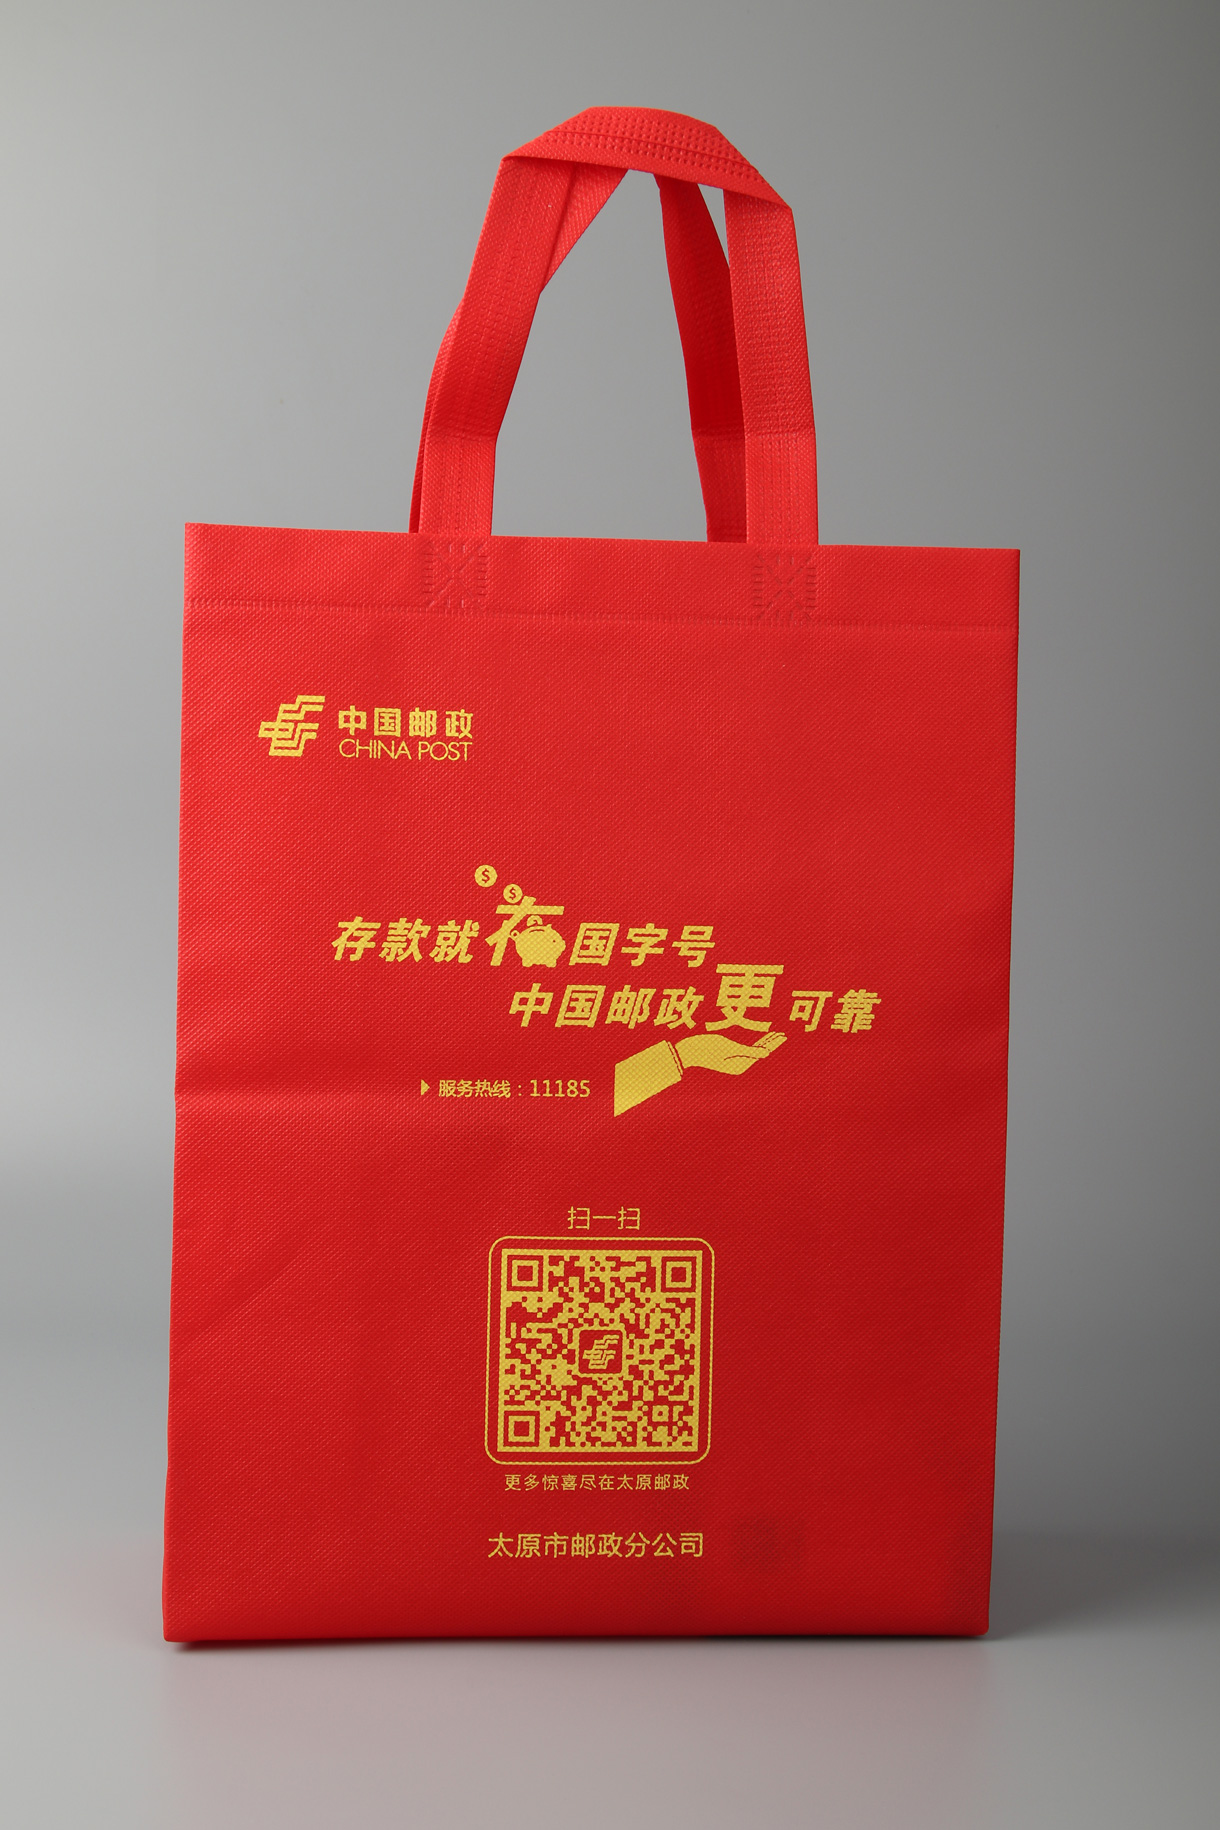 上海逗艺家居有限公司将亮相CIPPME上海包装展